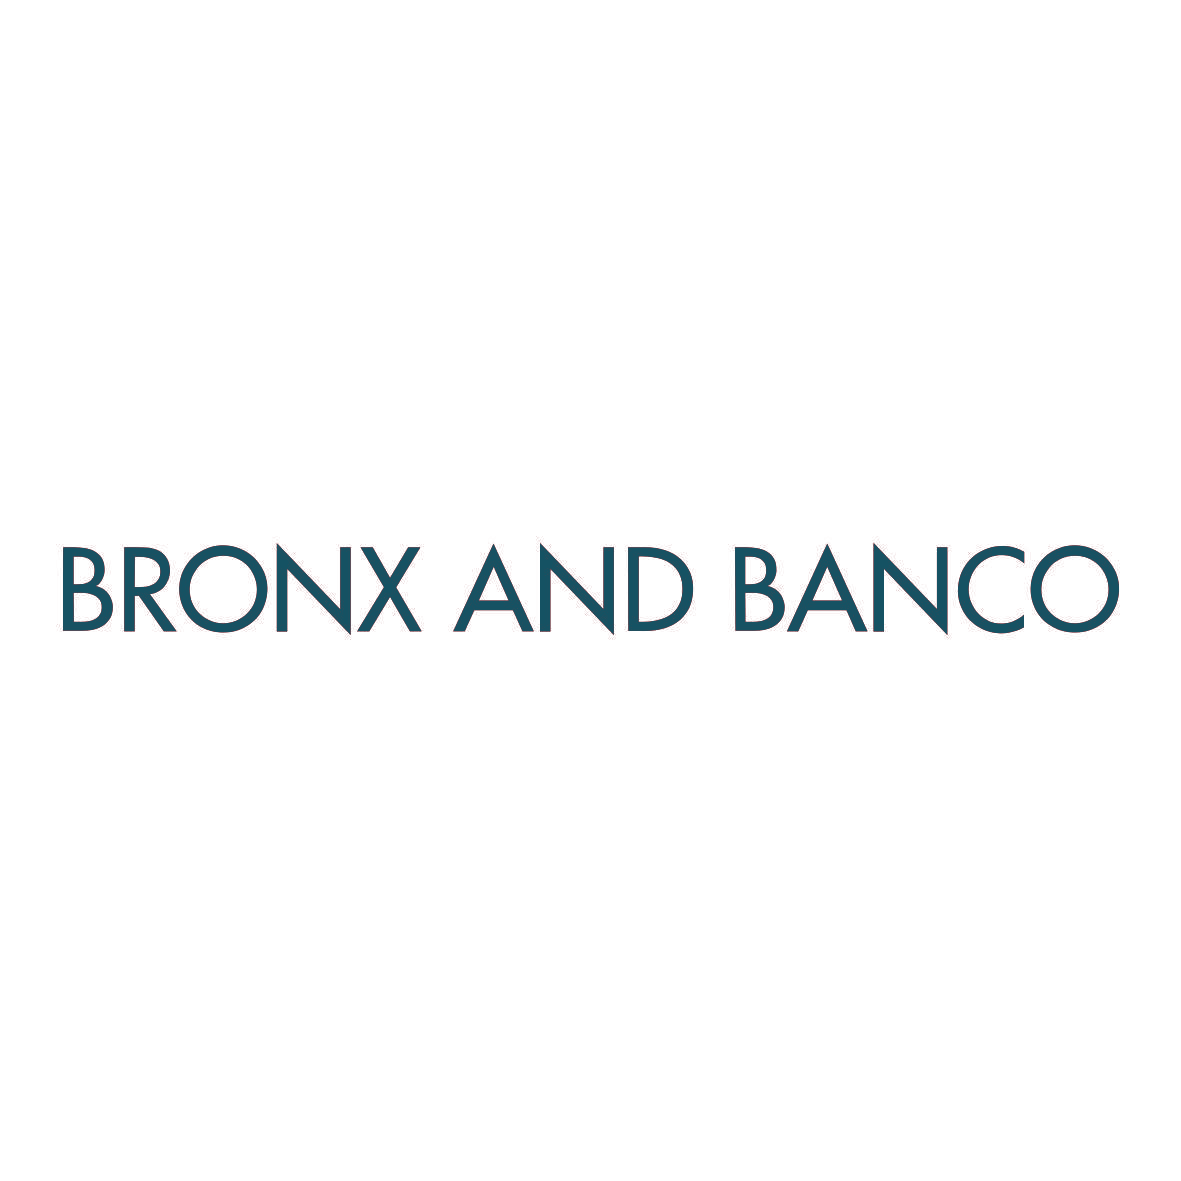 BRONX AND BANCO